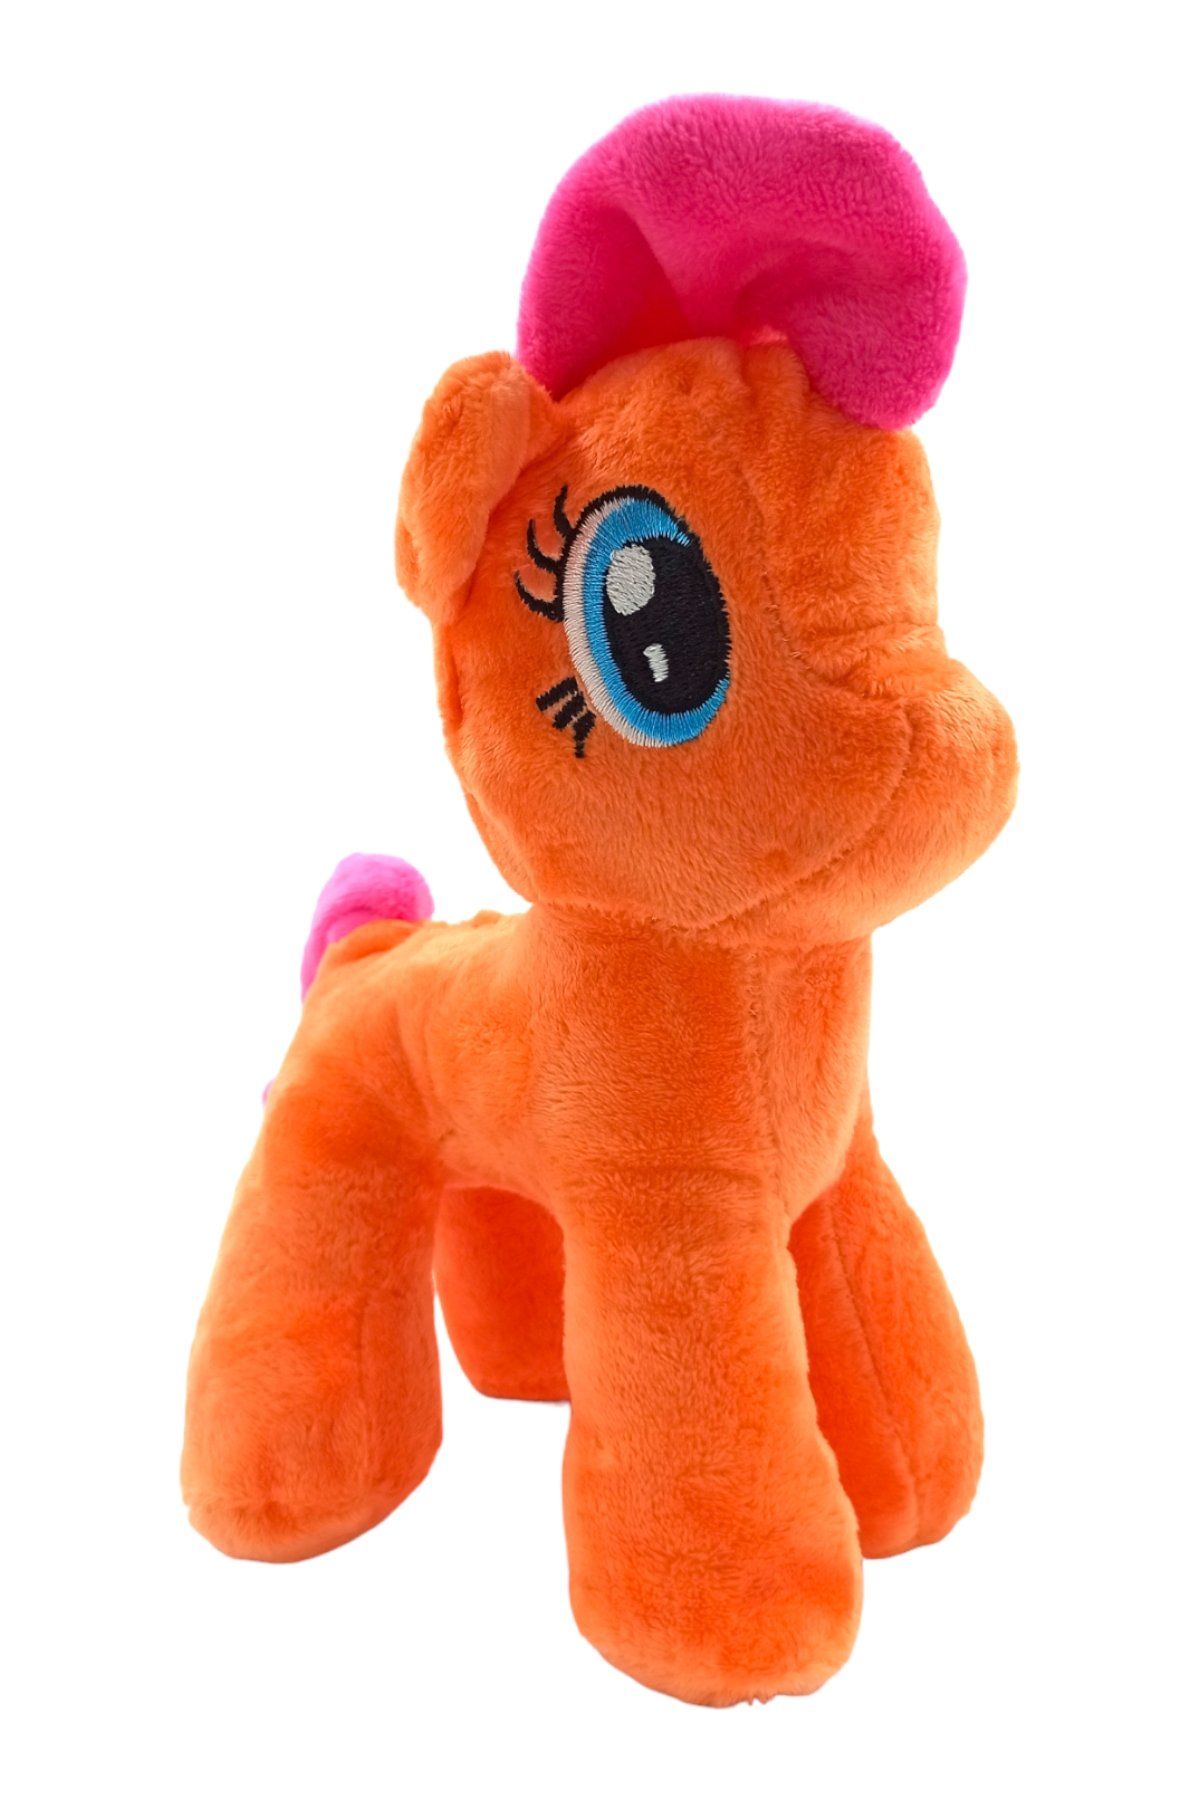 Çocukların Favorisi: Vantuzlu Peluş Pony Figürü Turuncu Renkli 23cm.